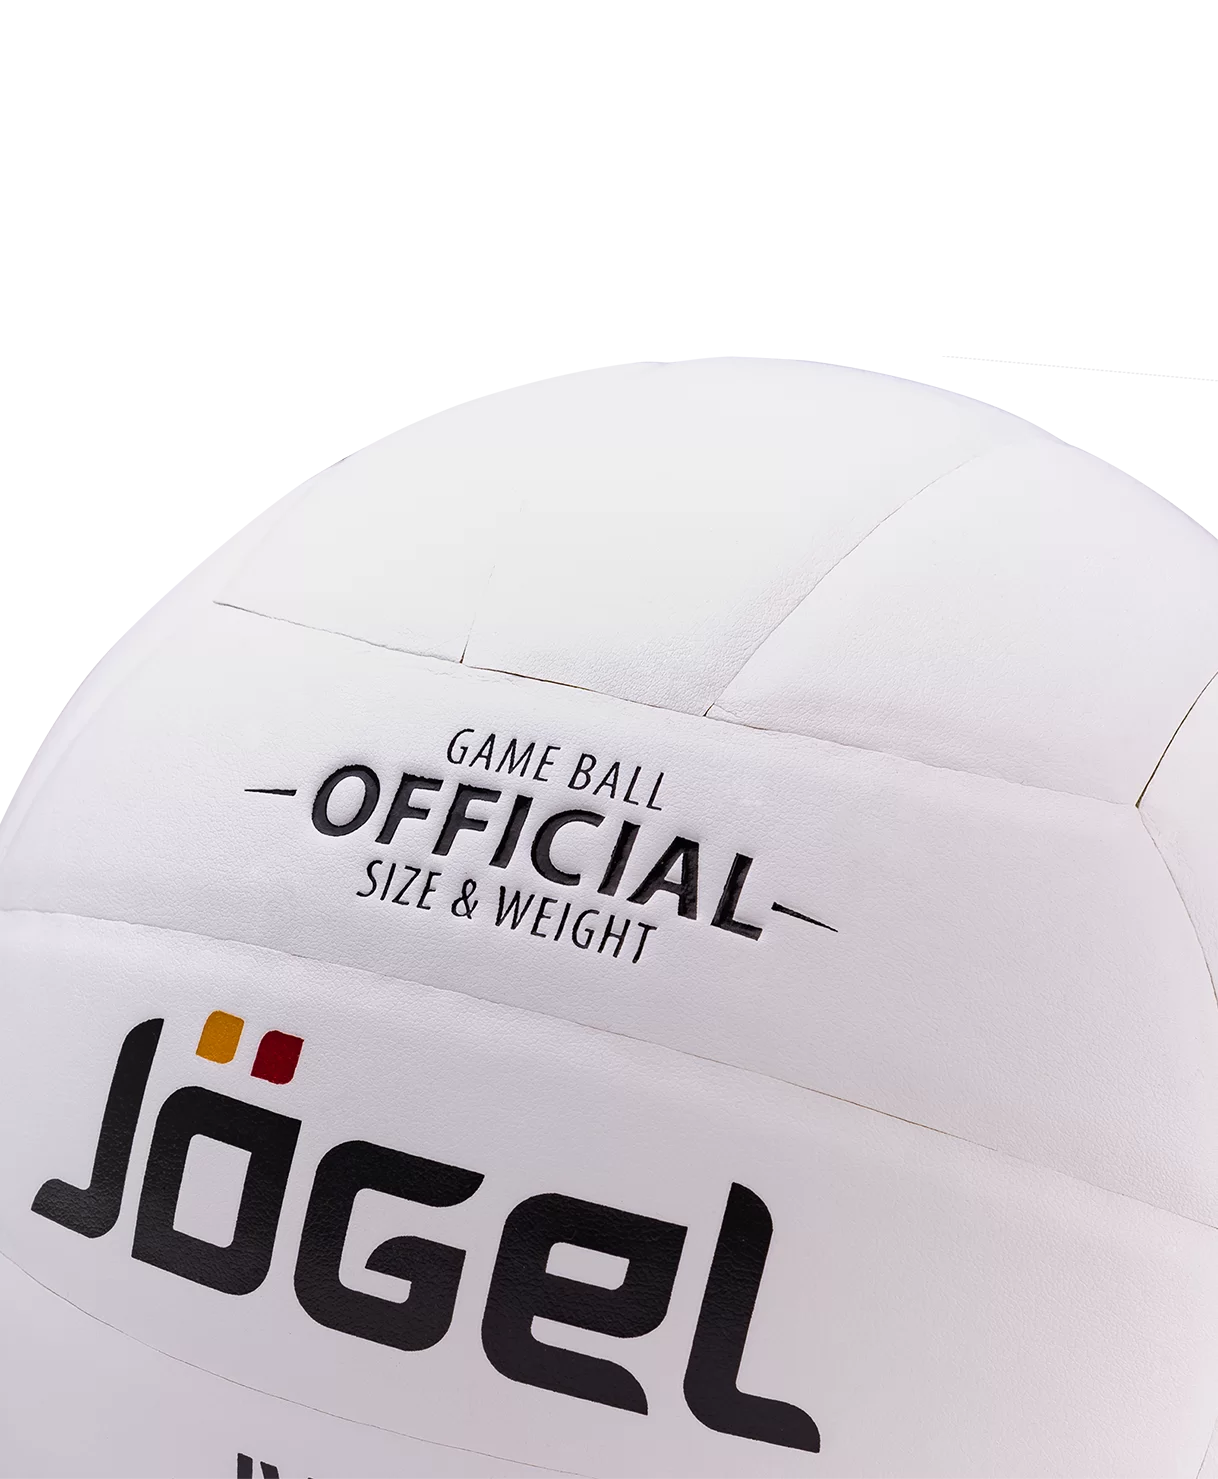 Фото Мяч волейбольный Jögel JV-500 9342 со склада магазина СпортСЕ